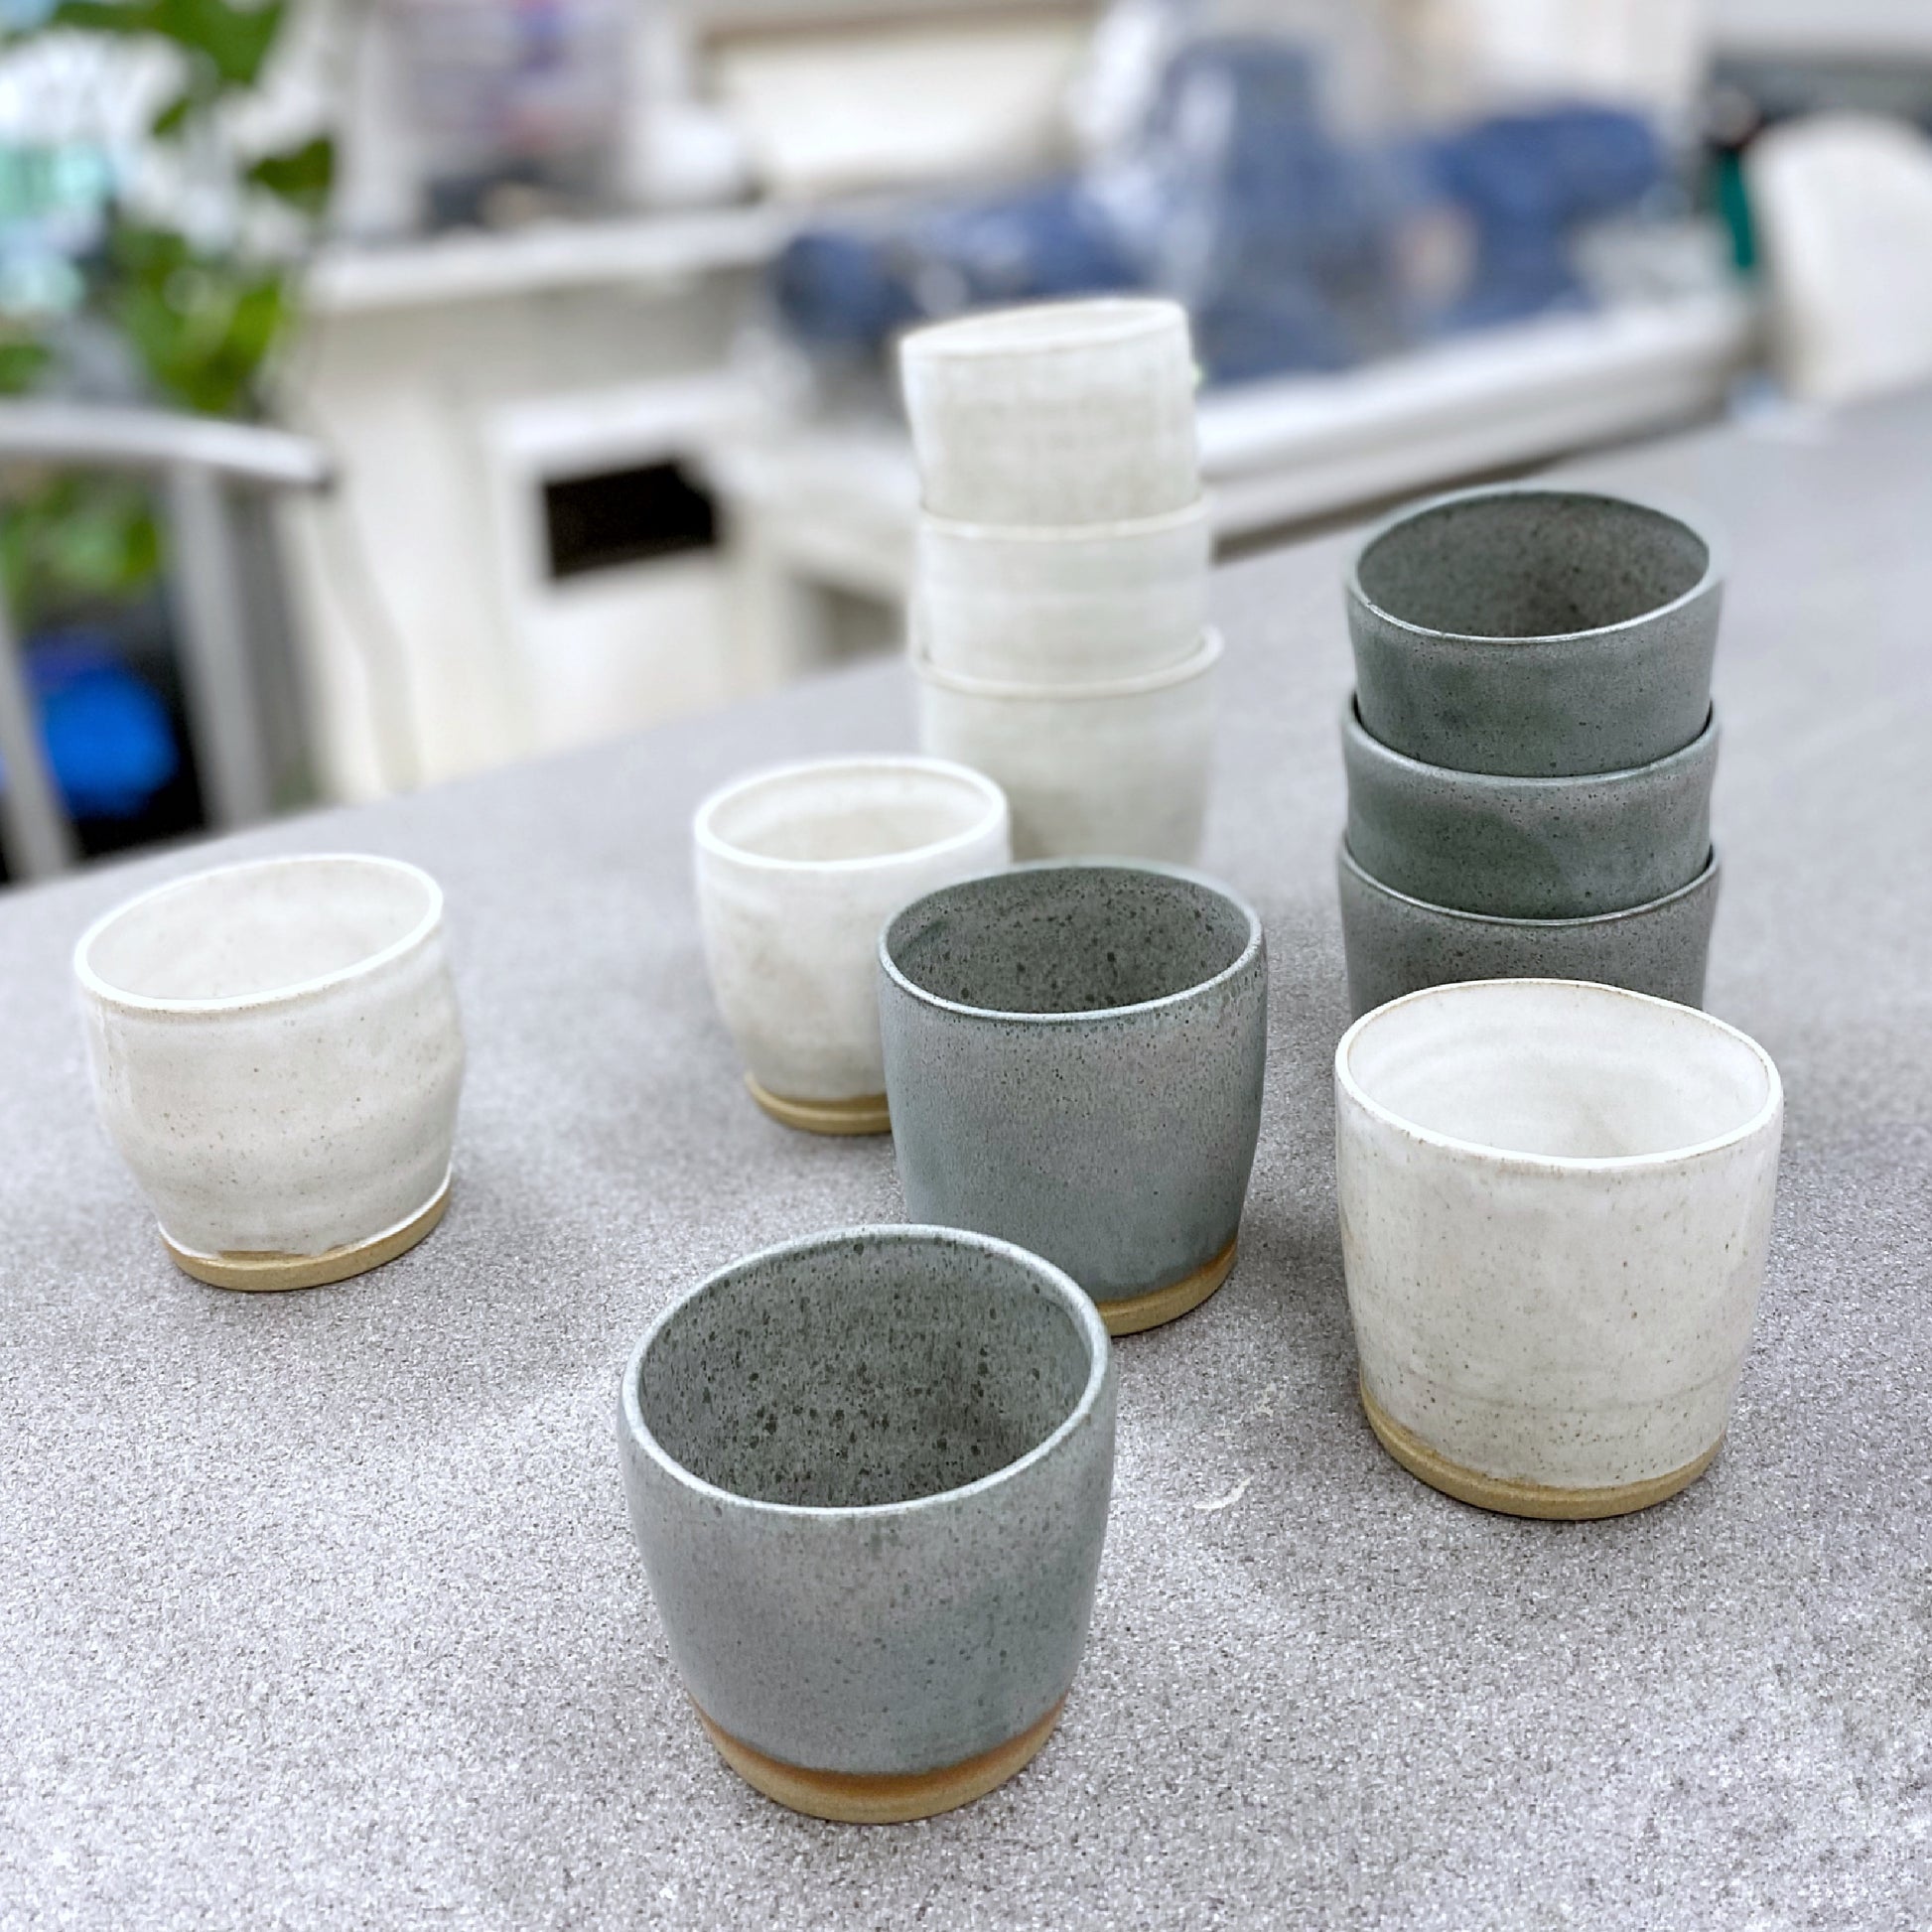 Ceramics made to order - Plum & Belle